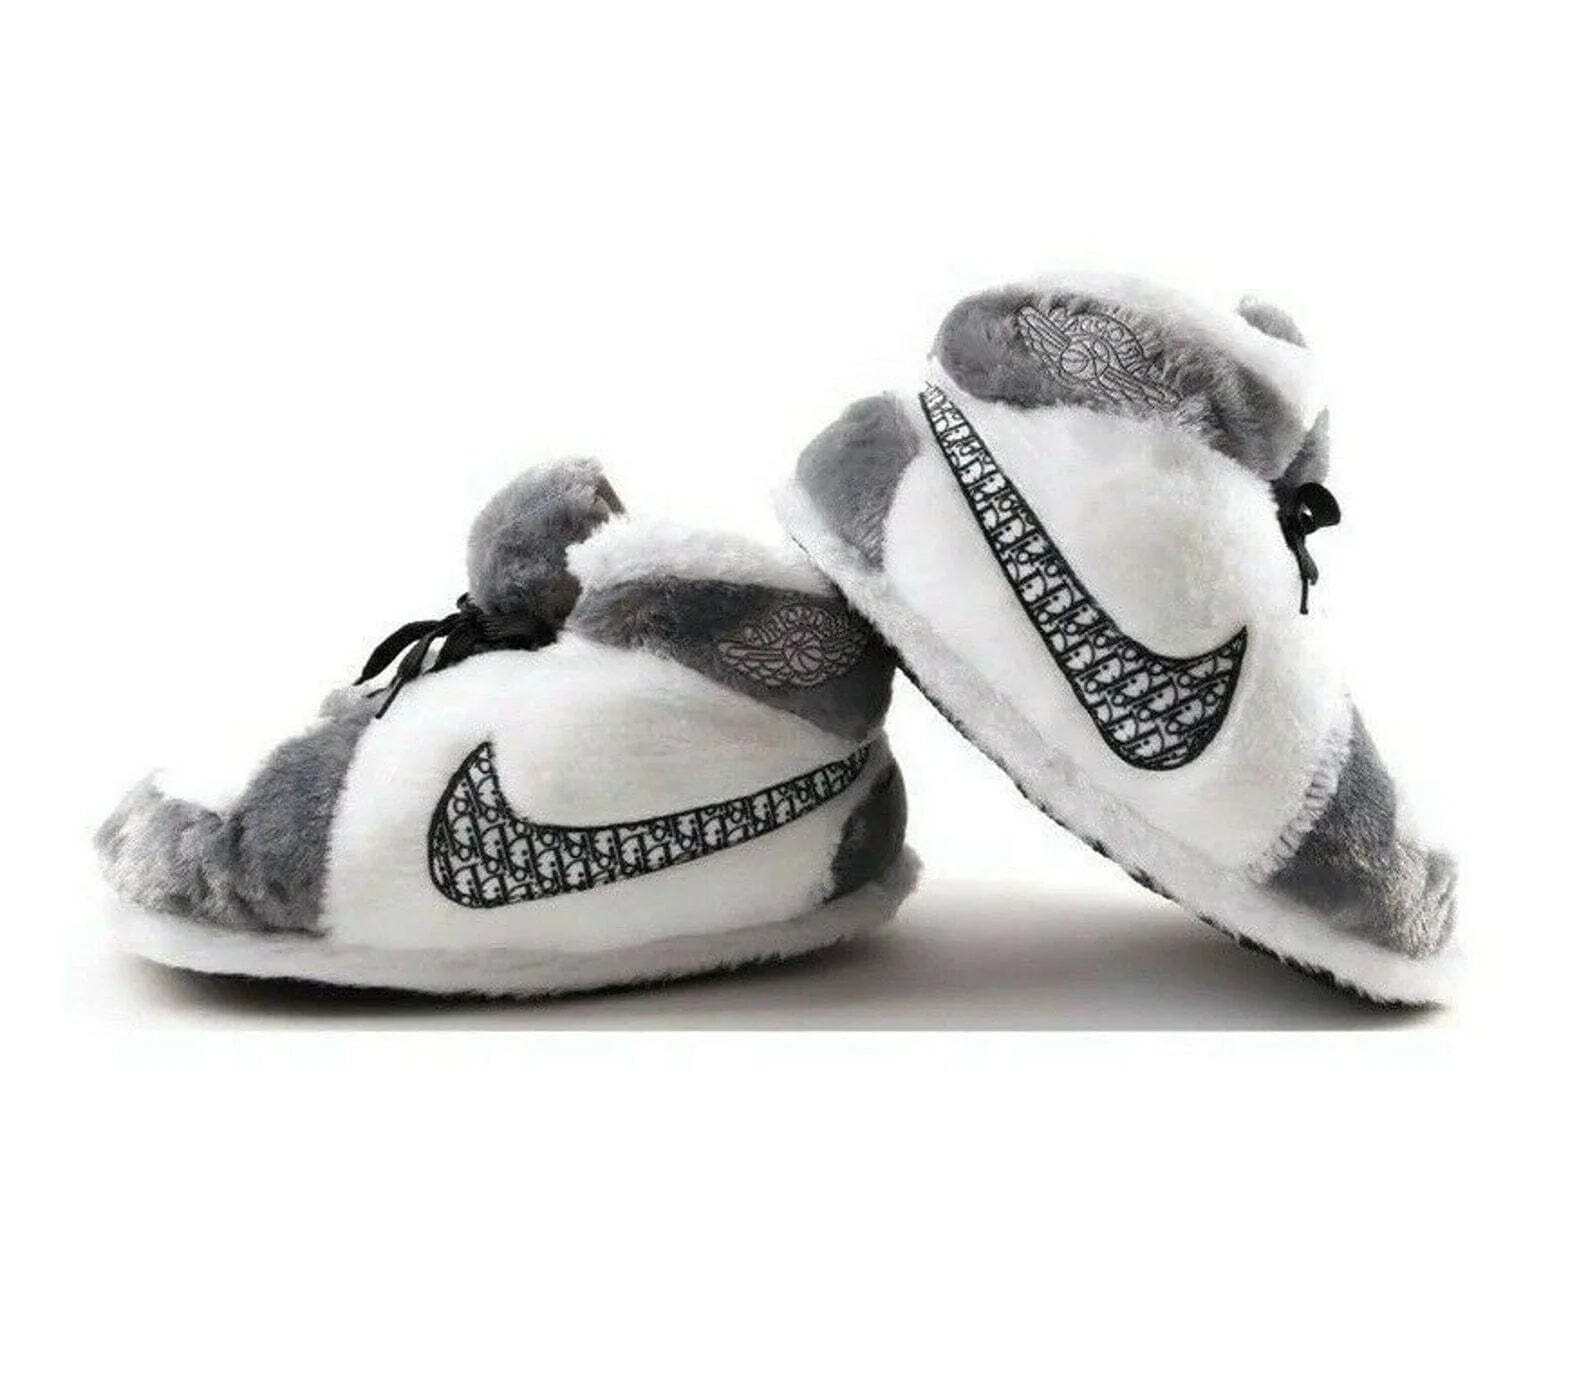 HomeBound Essentials Grey & White / 6 (28-31 cm in length) Comfy Jordan Plush Sneaker Slipper Dunks